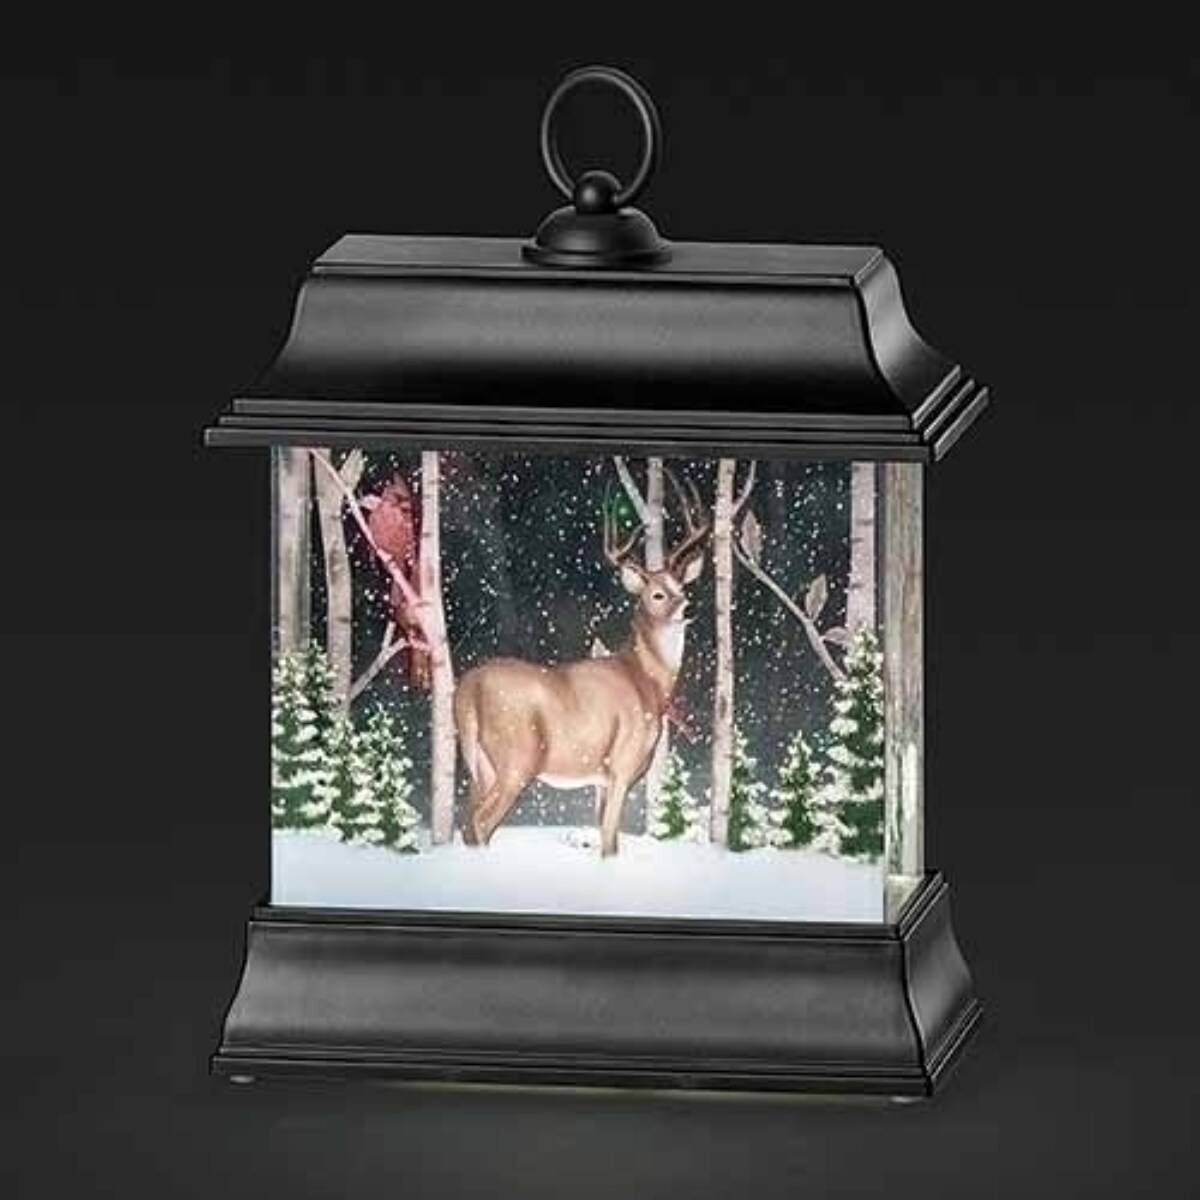 Diamond Painting - Deer with Lantern 